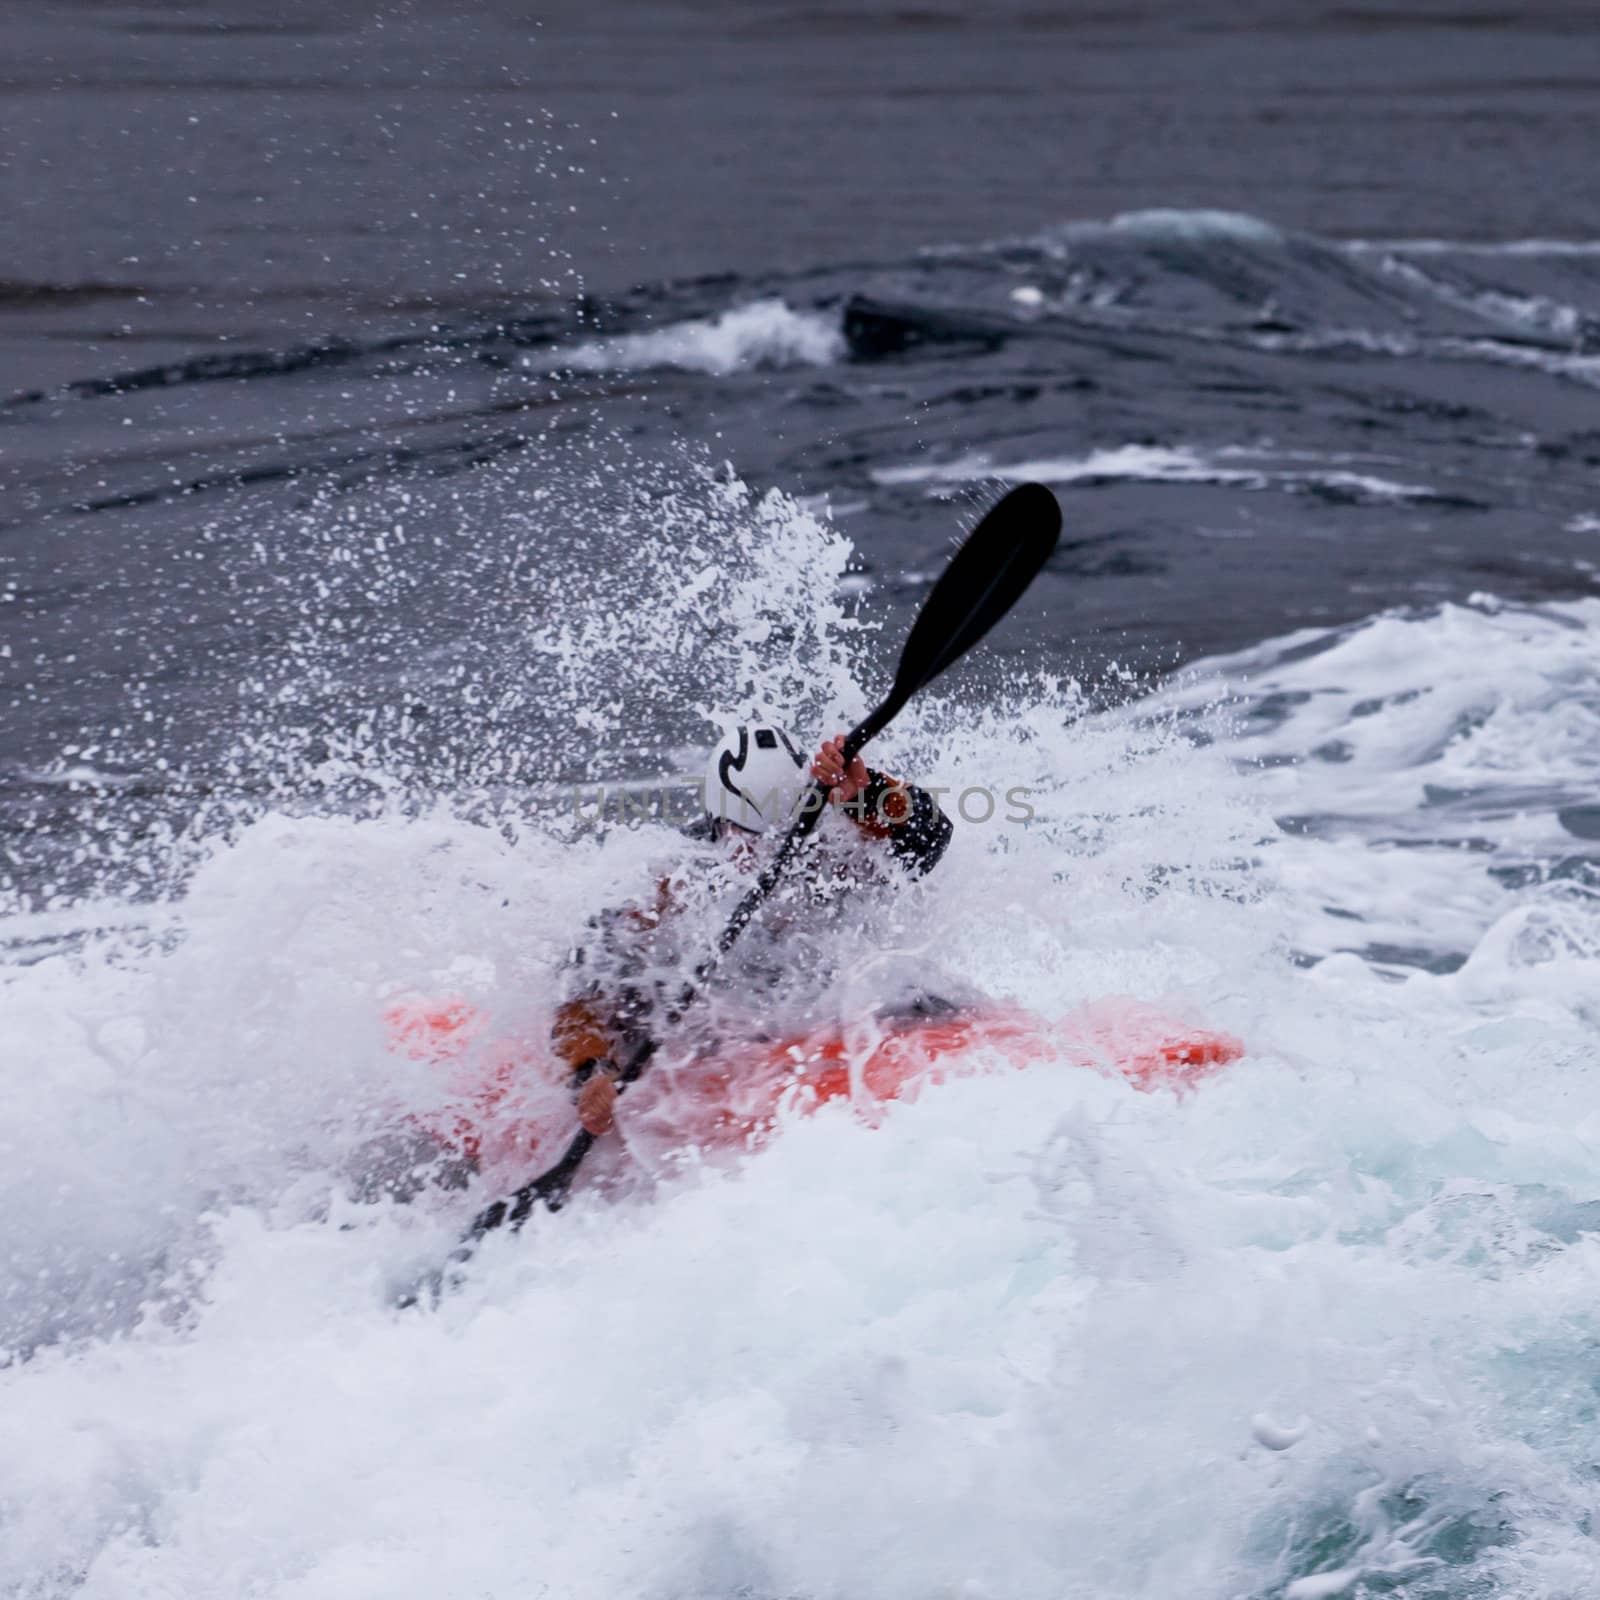 Kayaker in white water paddling breaking waves by PiLens